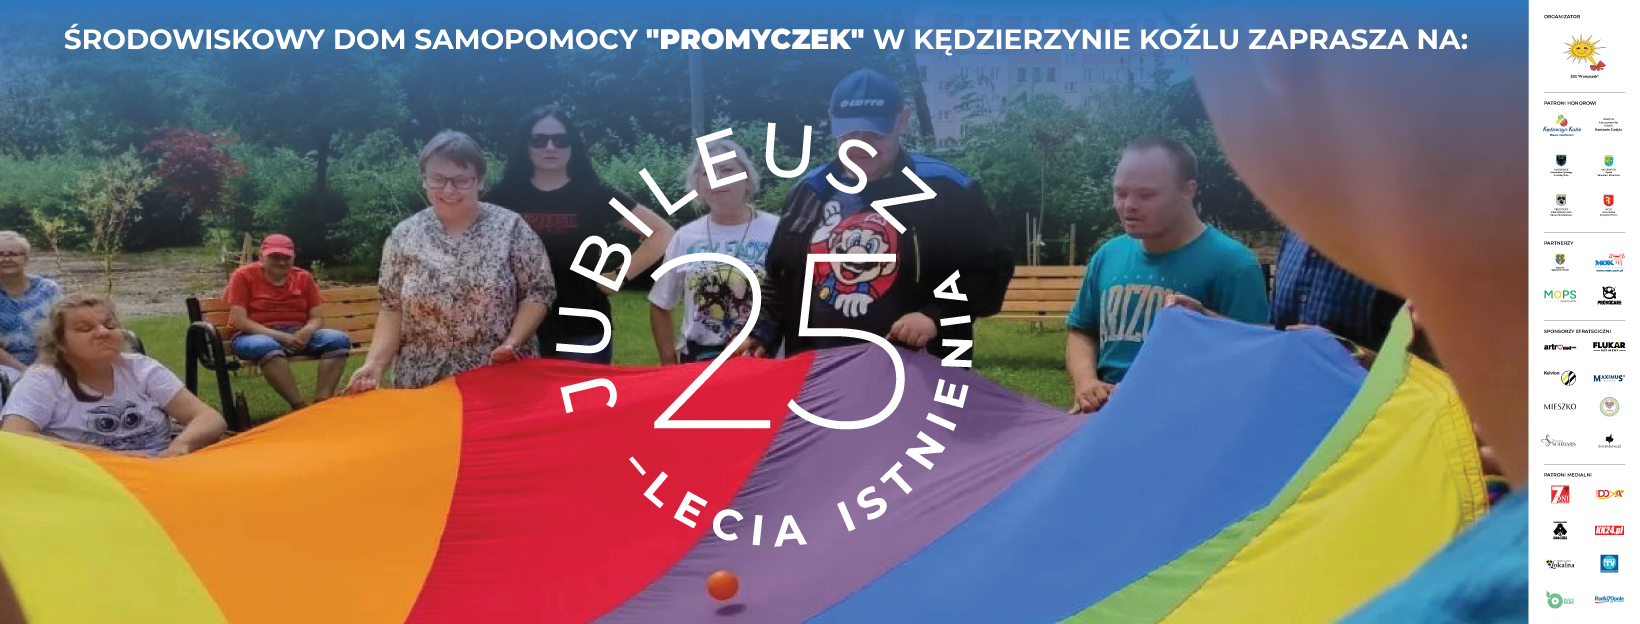 Jubileusz 25-lecia ŚDS 'Promyczek' już w piątek